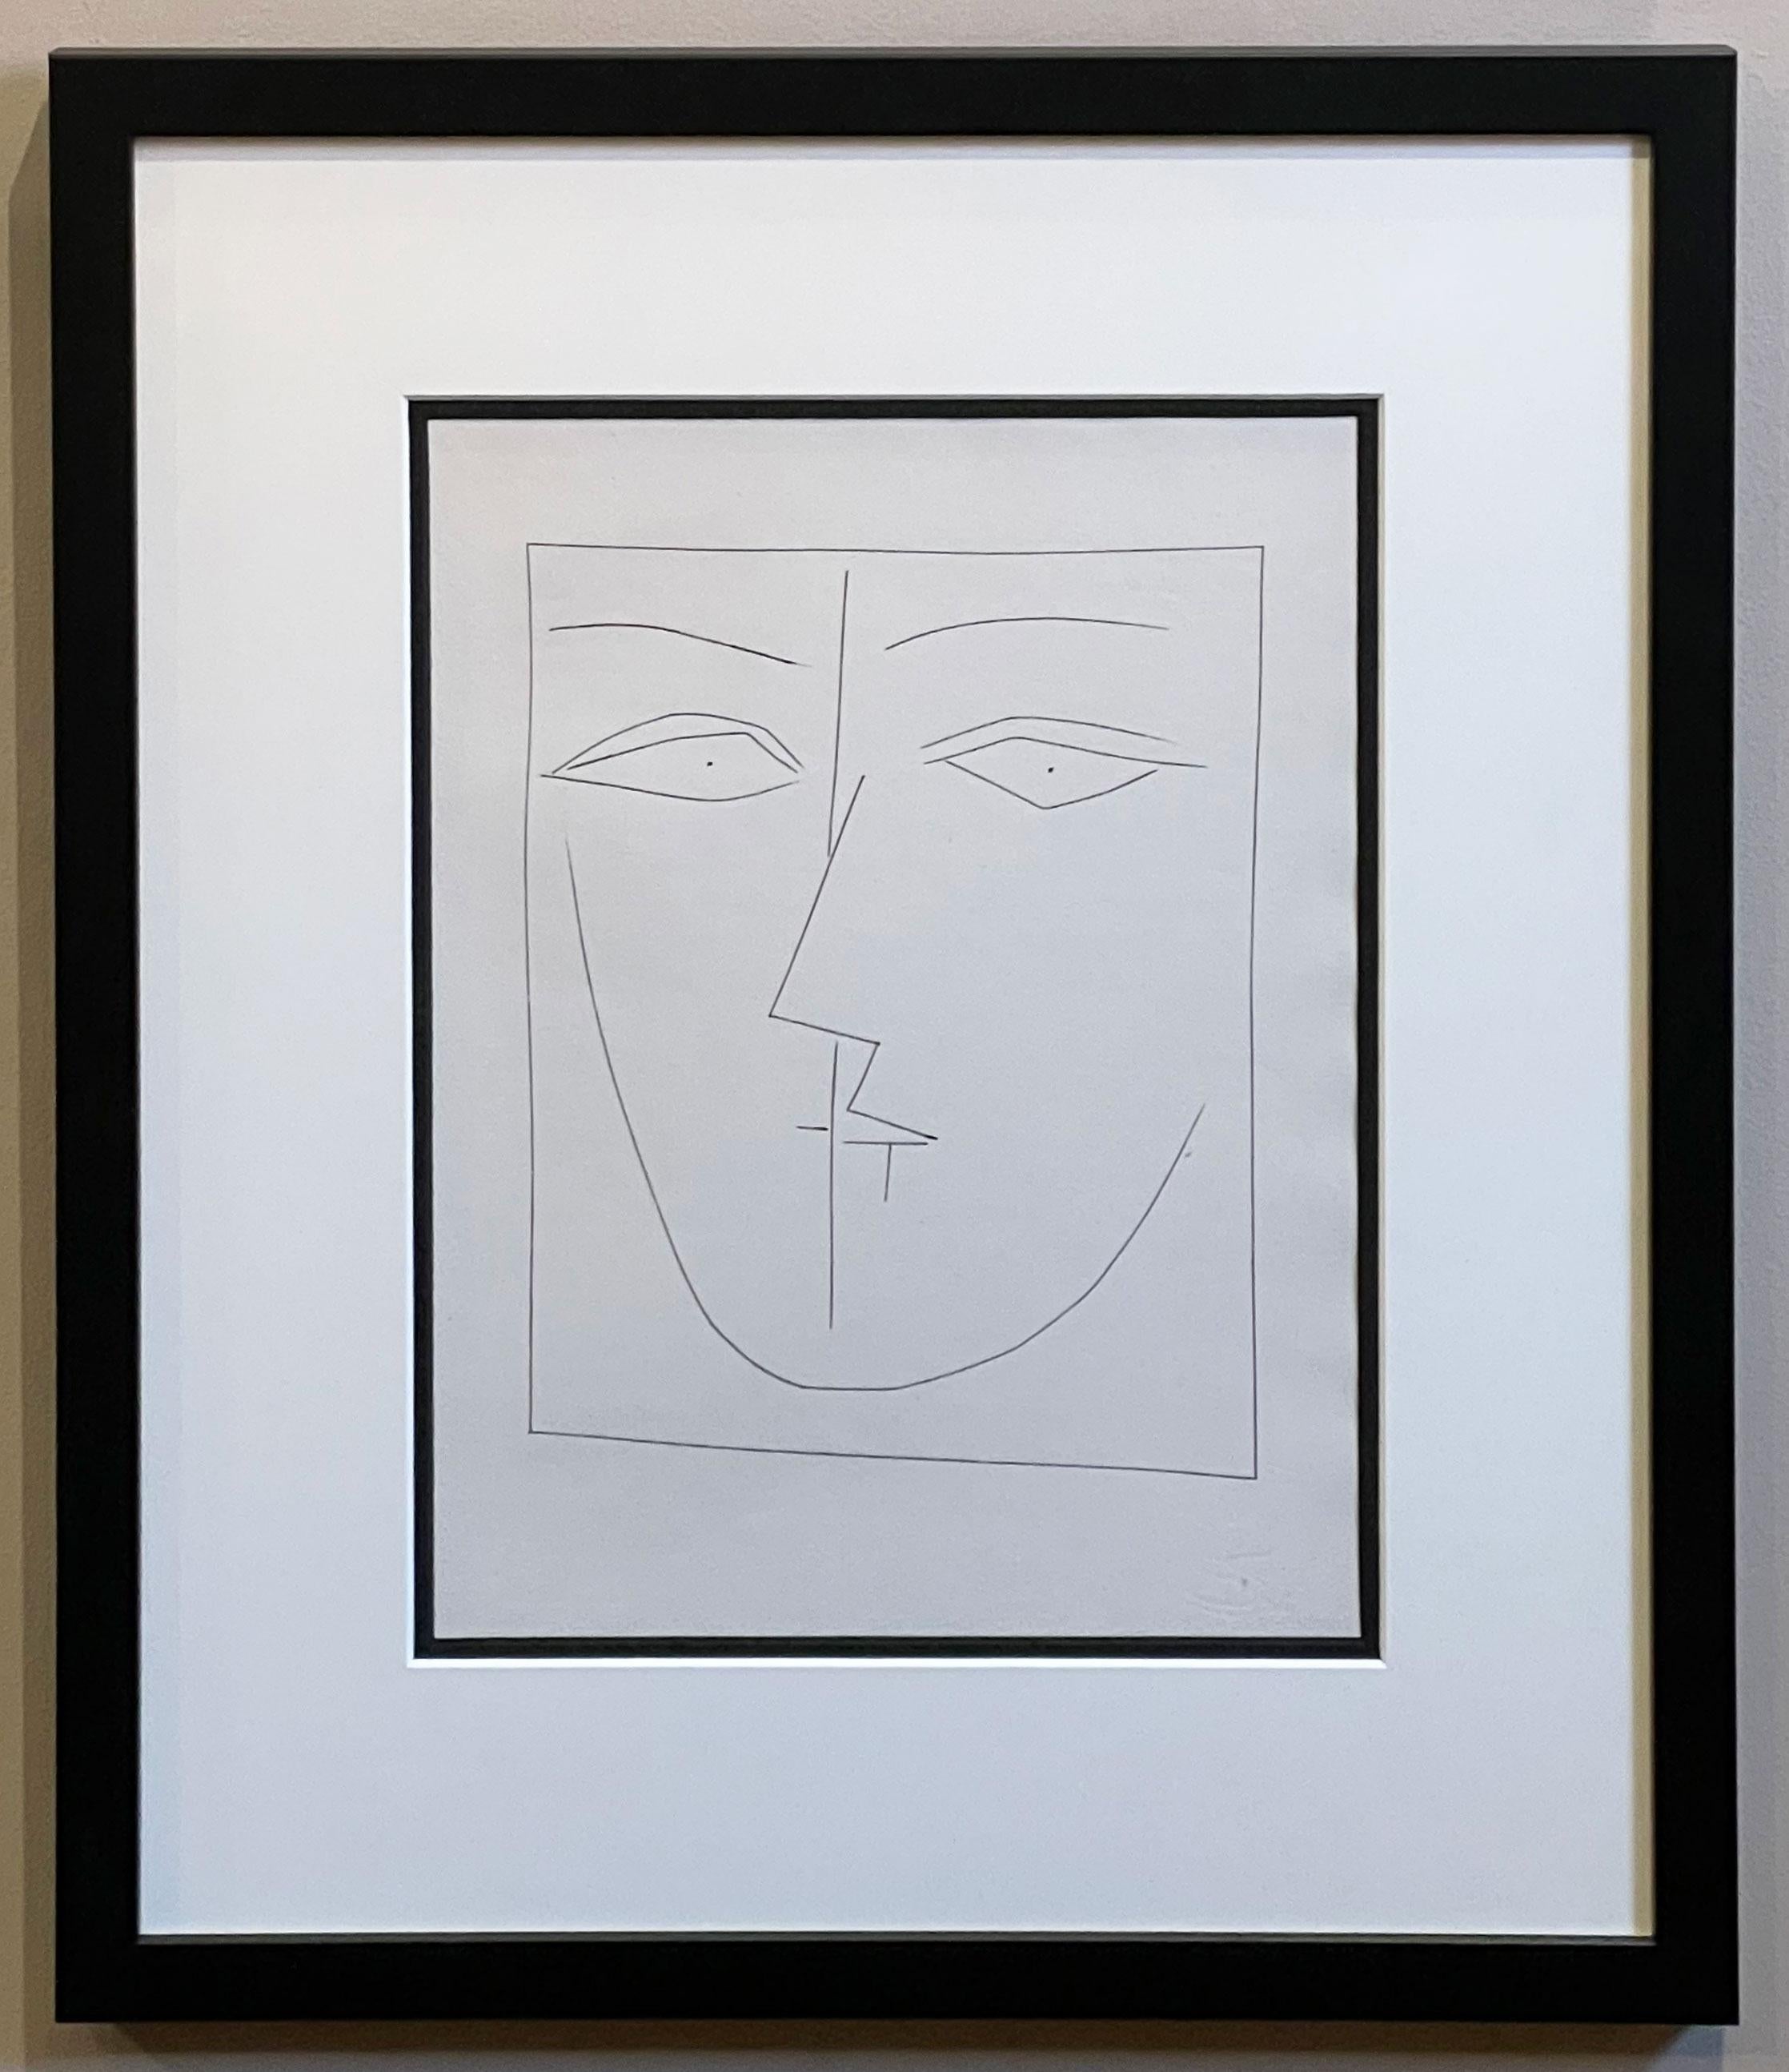 Pablo Picasso Portrait Print - Square Head of a Woman in Semi-profile (Plate XV), from Carmen